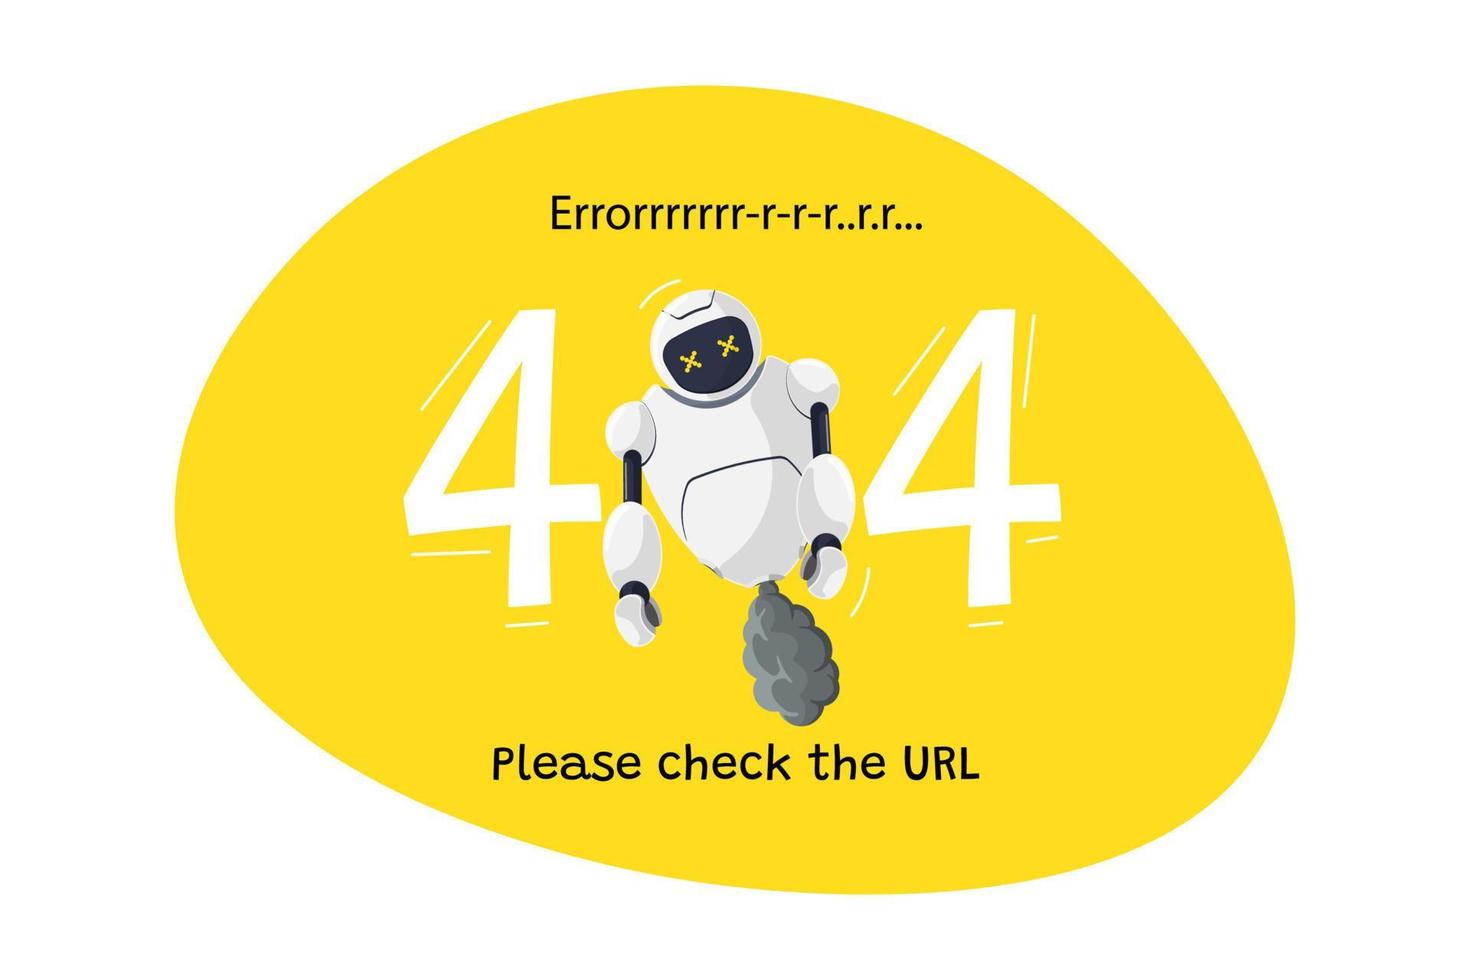 pagina del sito Web non trovata errore URL 404. carattere robot rotto su sfondo giallo. arresto anomalo del sito sul modello di progettazione web di lavoro tecnico con mascotte chatbot. fallimento dell'assistenza bot online dei cartoni animati. vettore